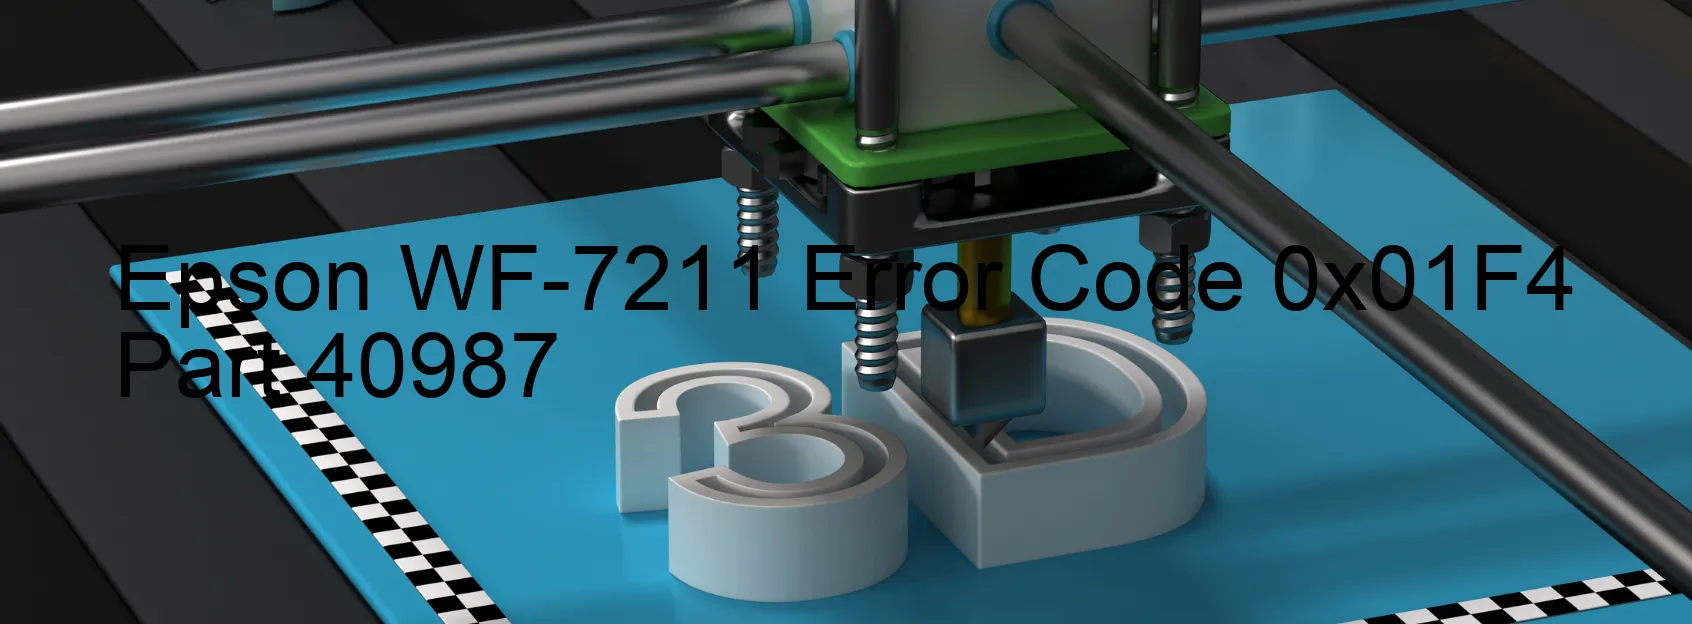 Epson WF-7211 Error Code 0x01F4 Part 40987